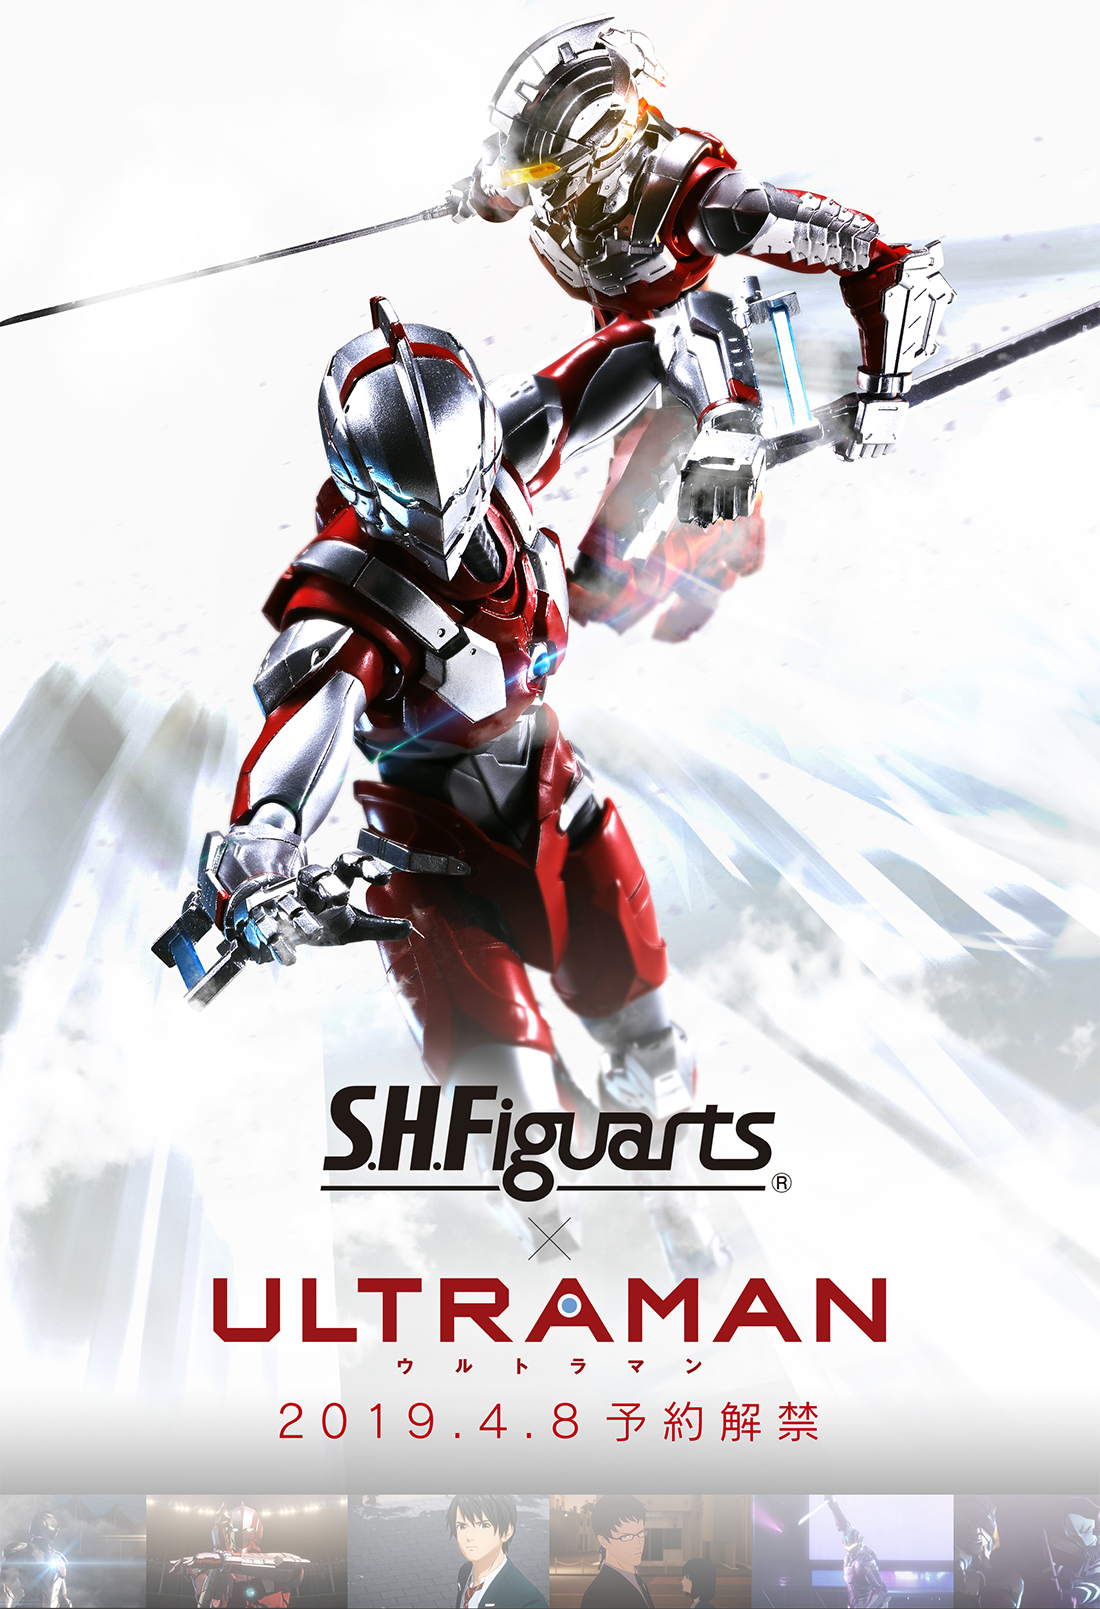 S H Figuarts Ultraman スペシャルページ 魂ウェブ